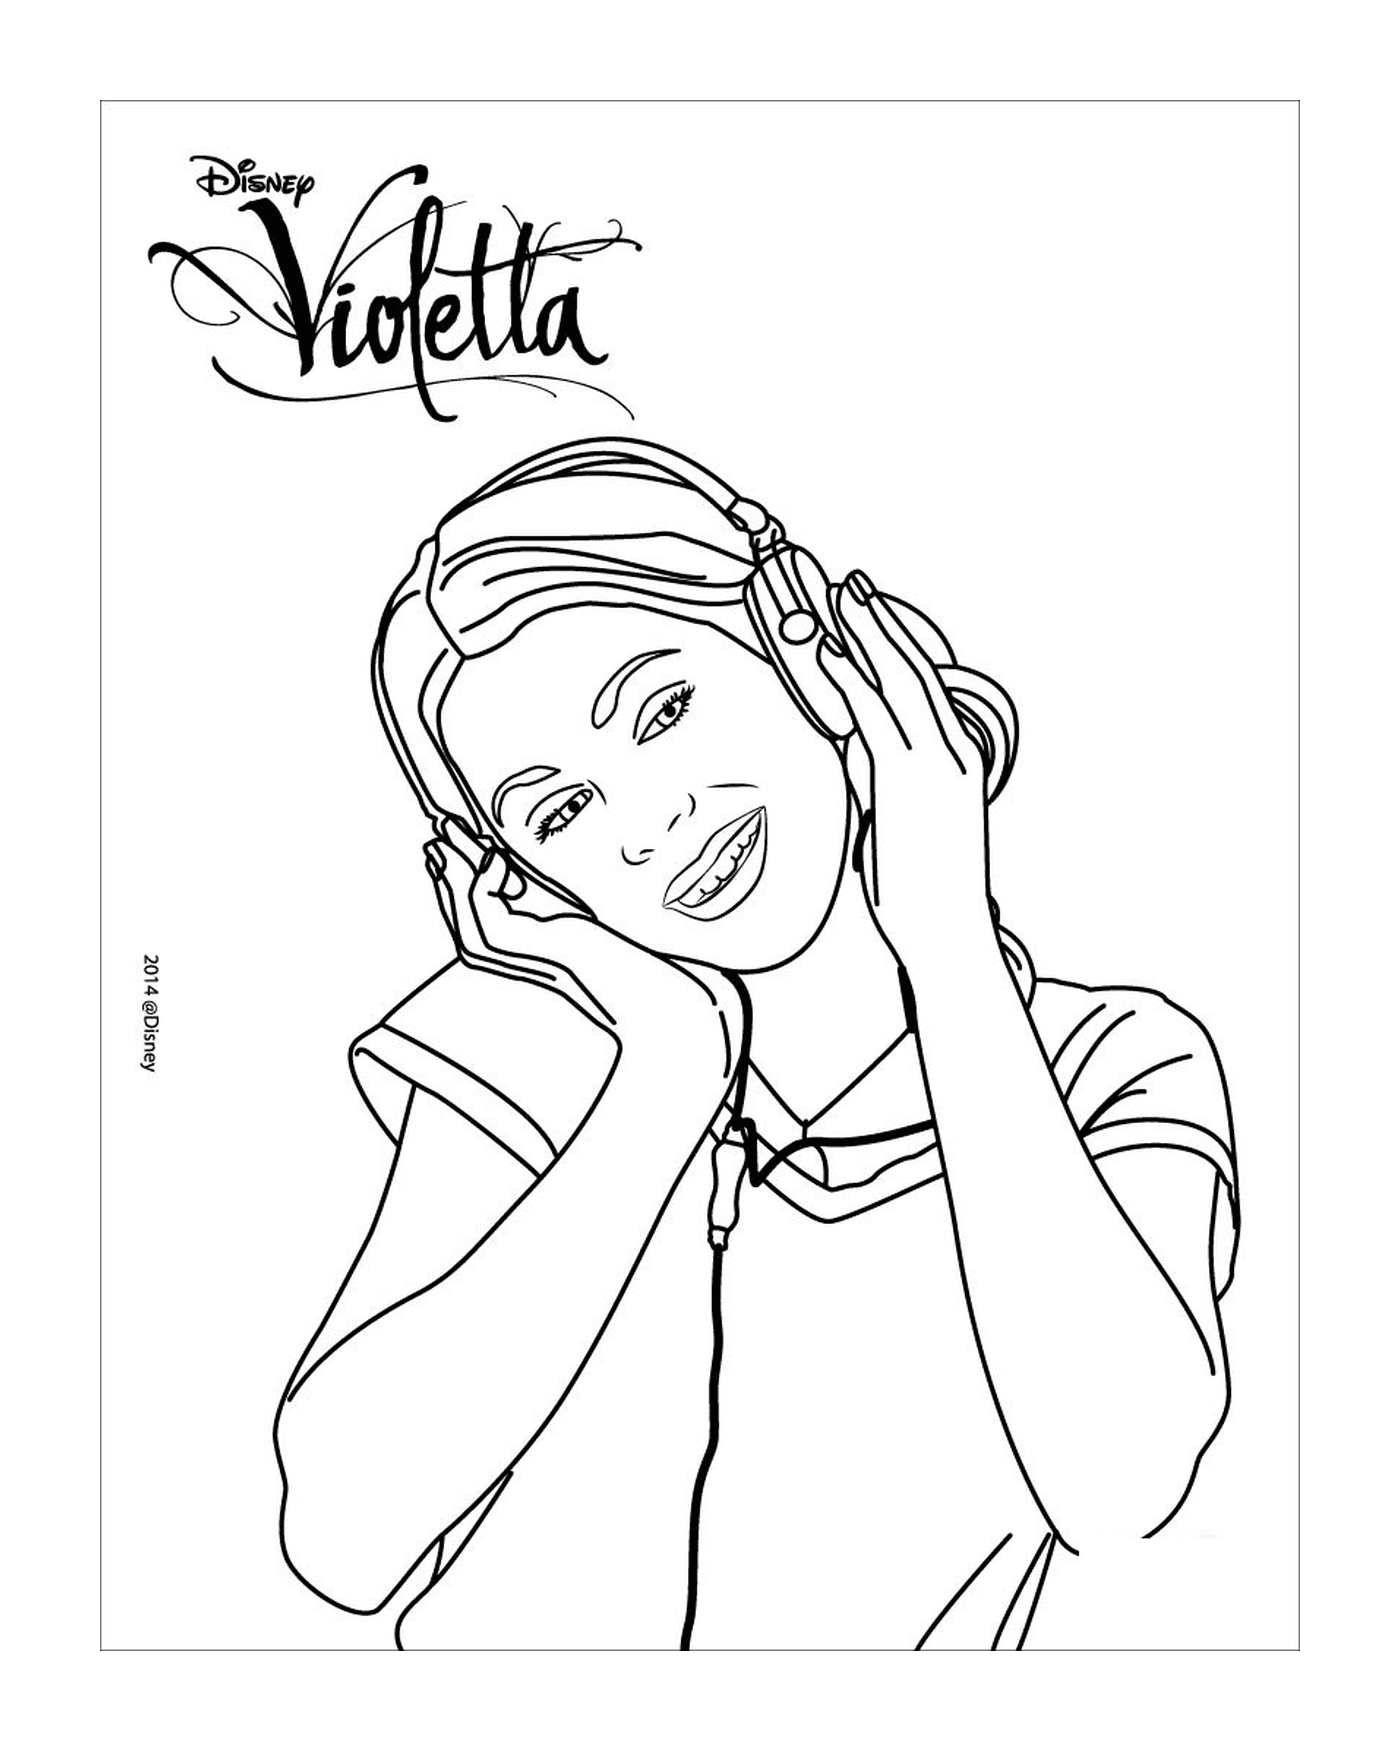  Violetta listens to music 